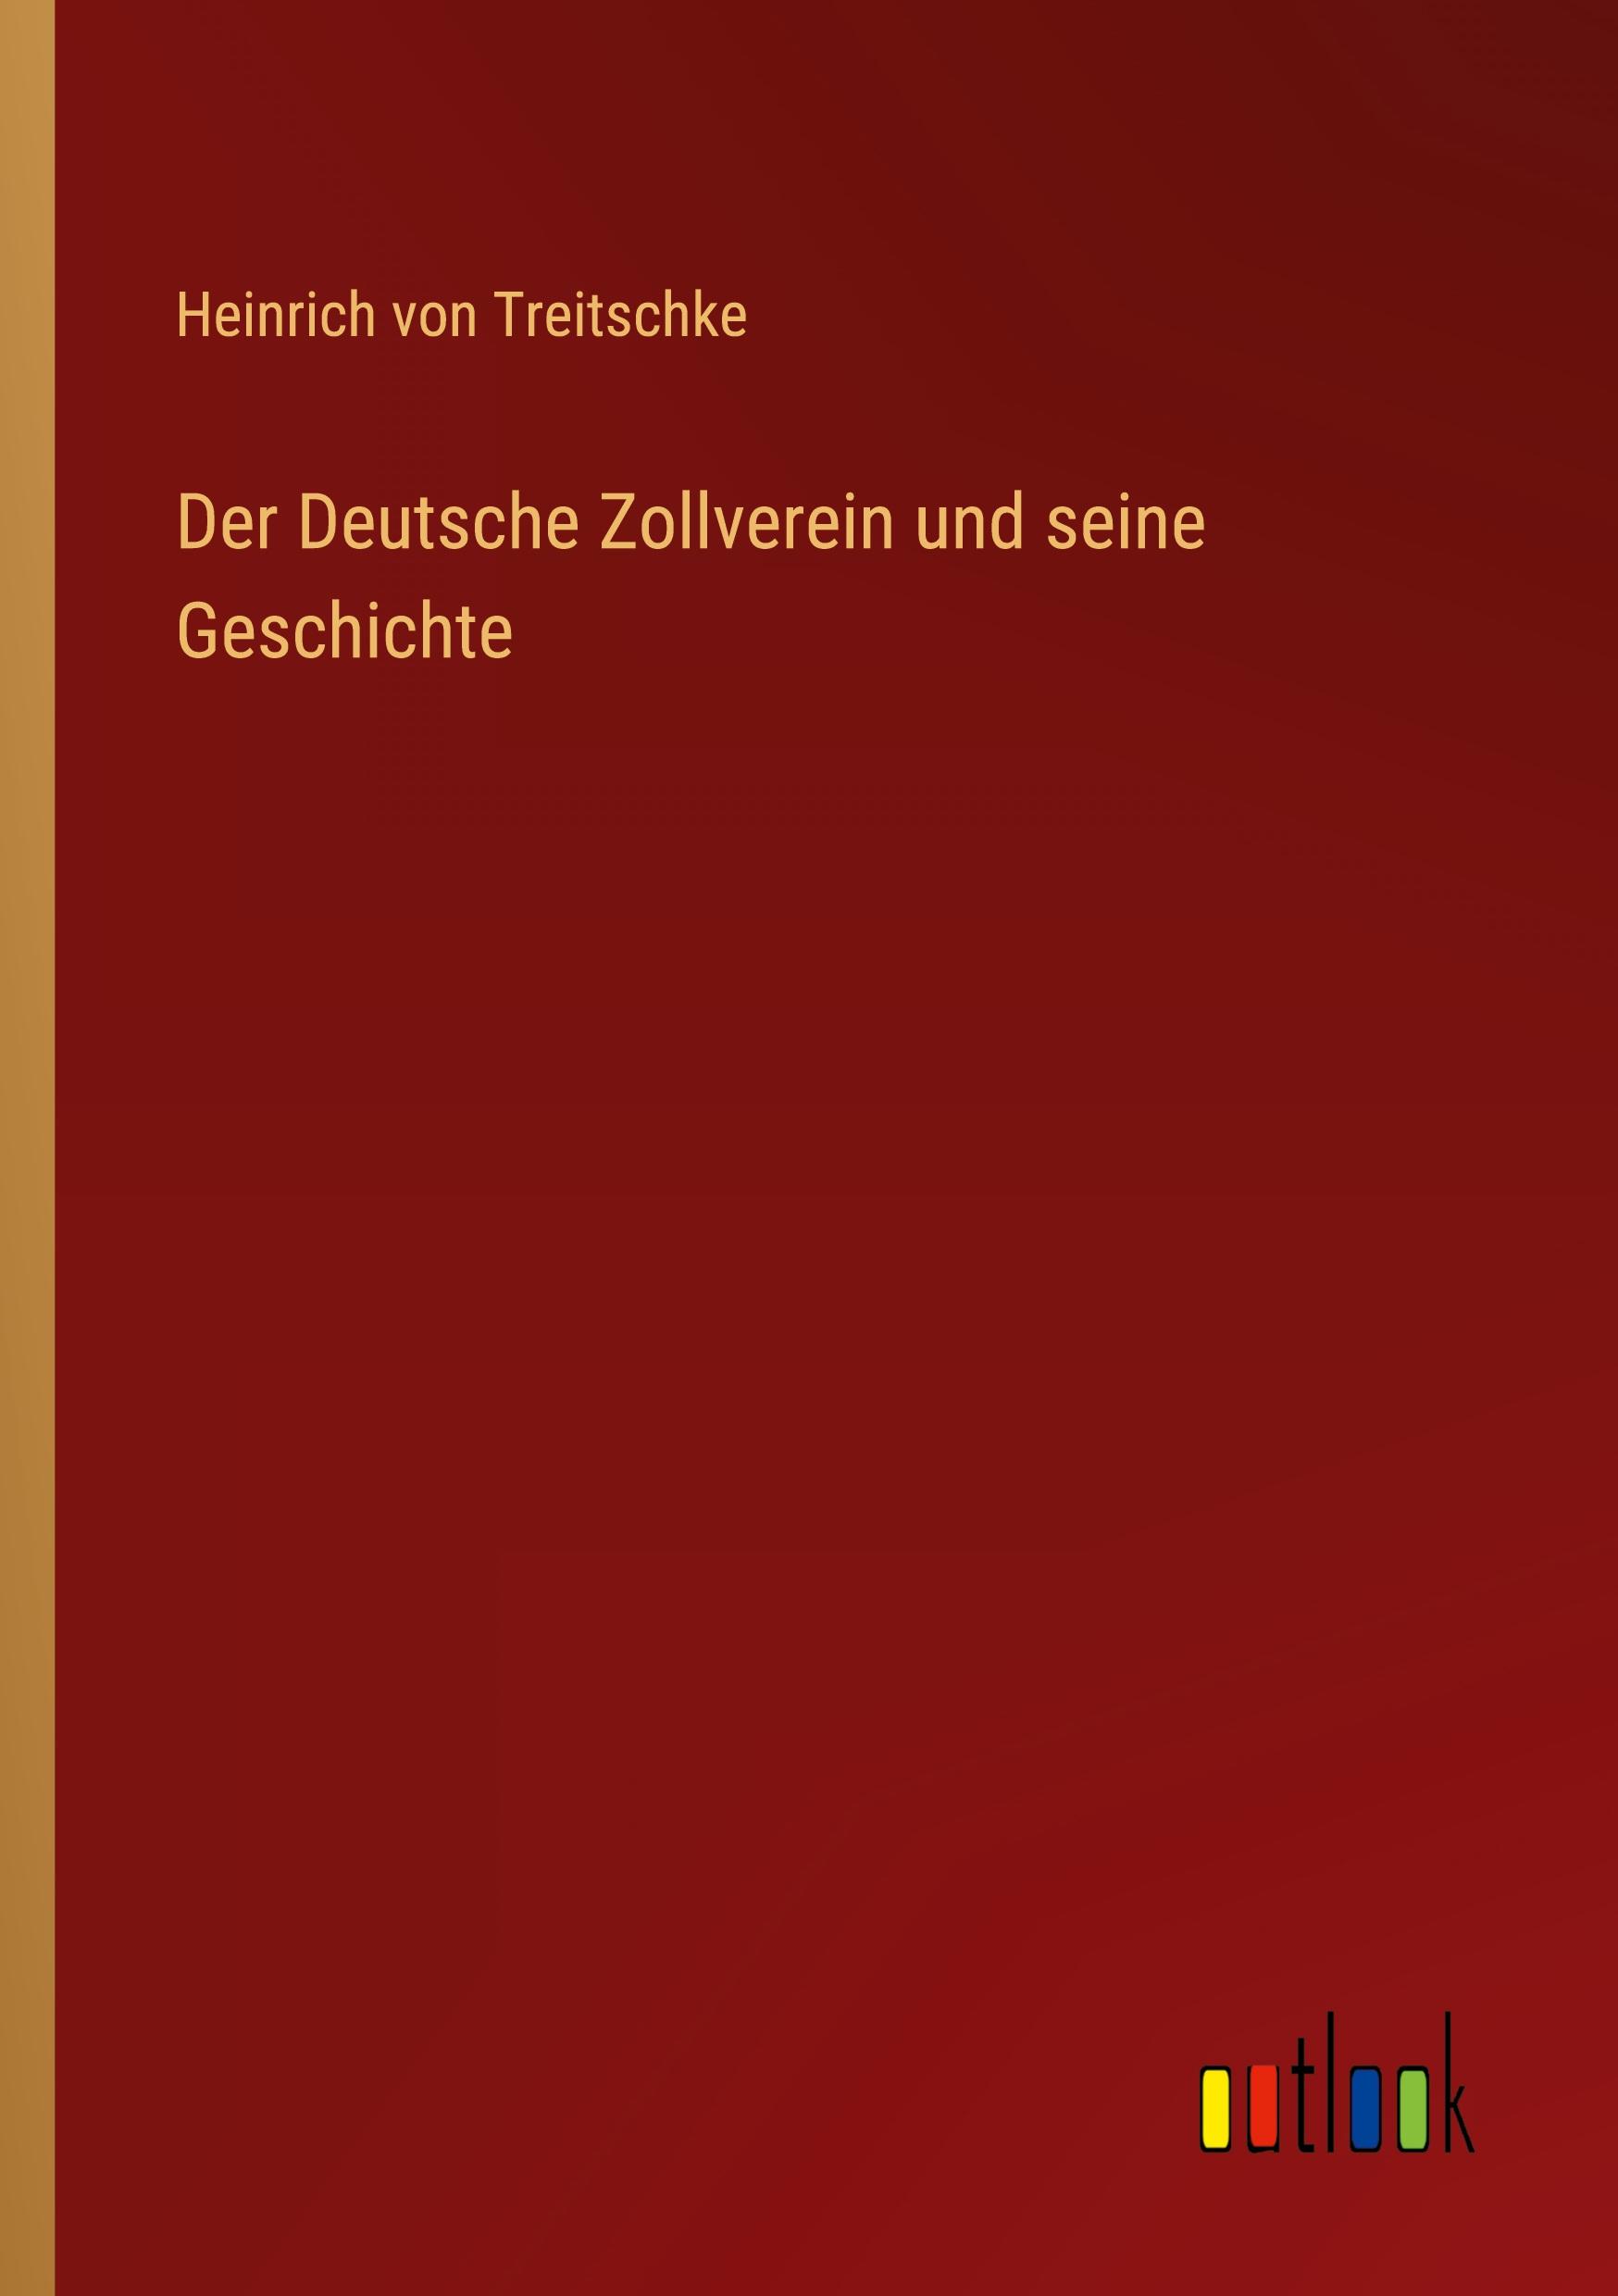 Der Deutsche Zollverein und seine Geschichte Heinrich von Treitschke Author